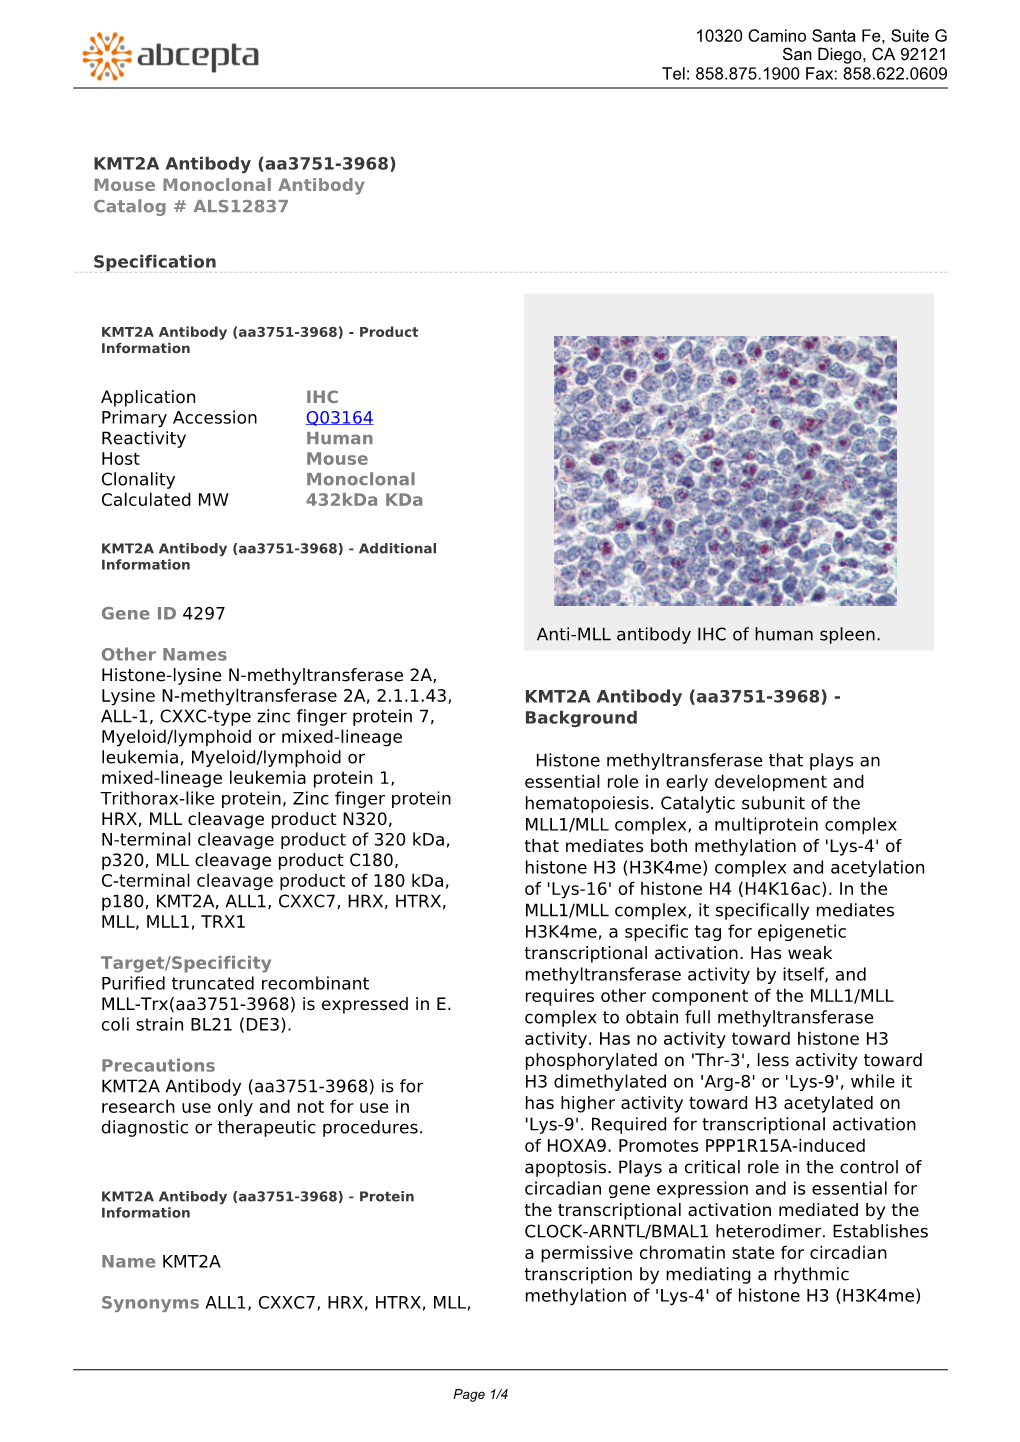 KMT2A Antibody (Aa3751-3968) Mouse Monoclonal Antibody Catalog # ALS12837